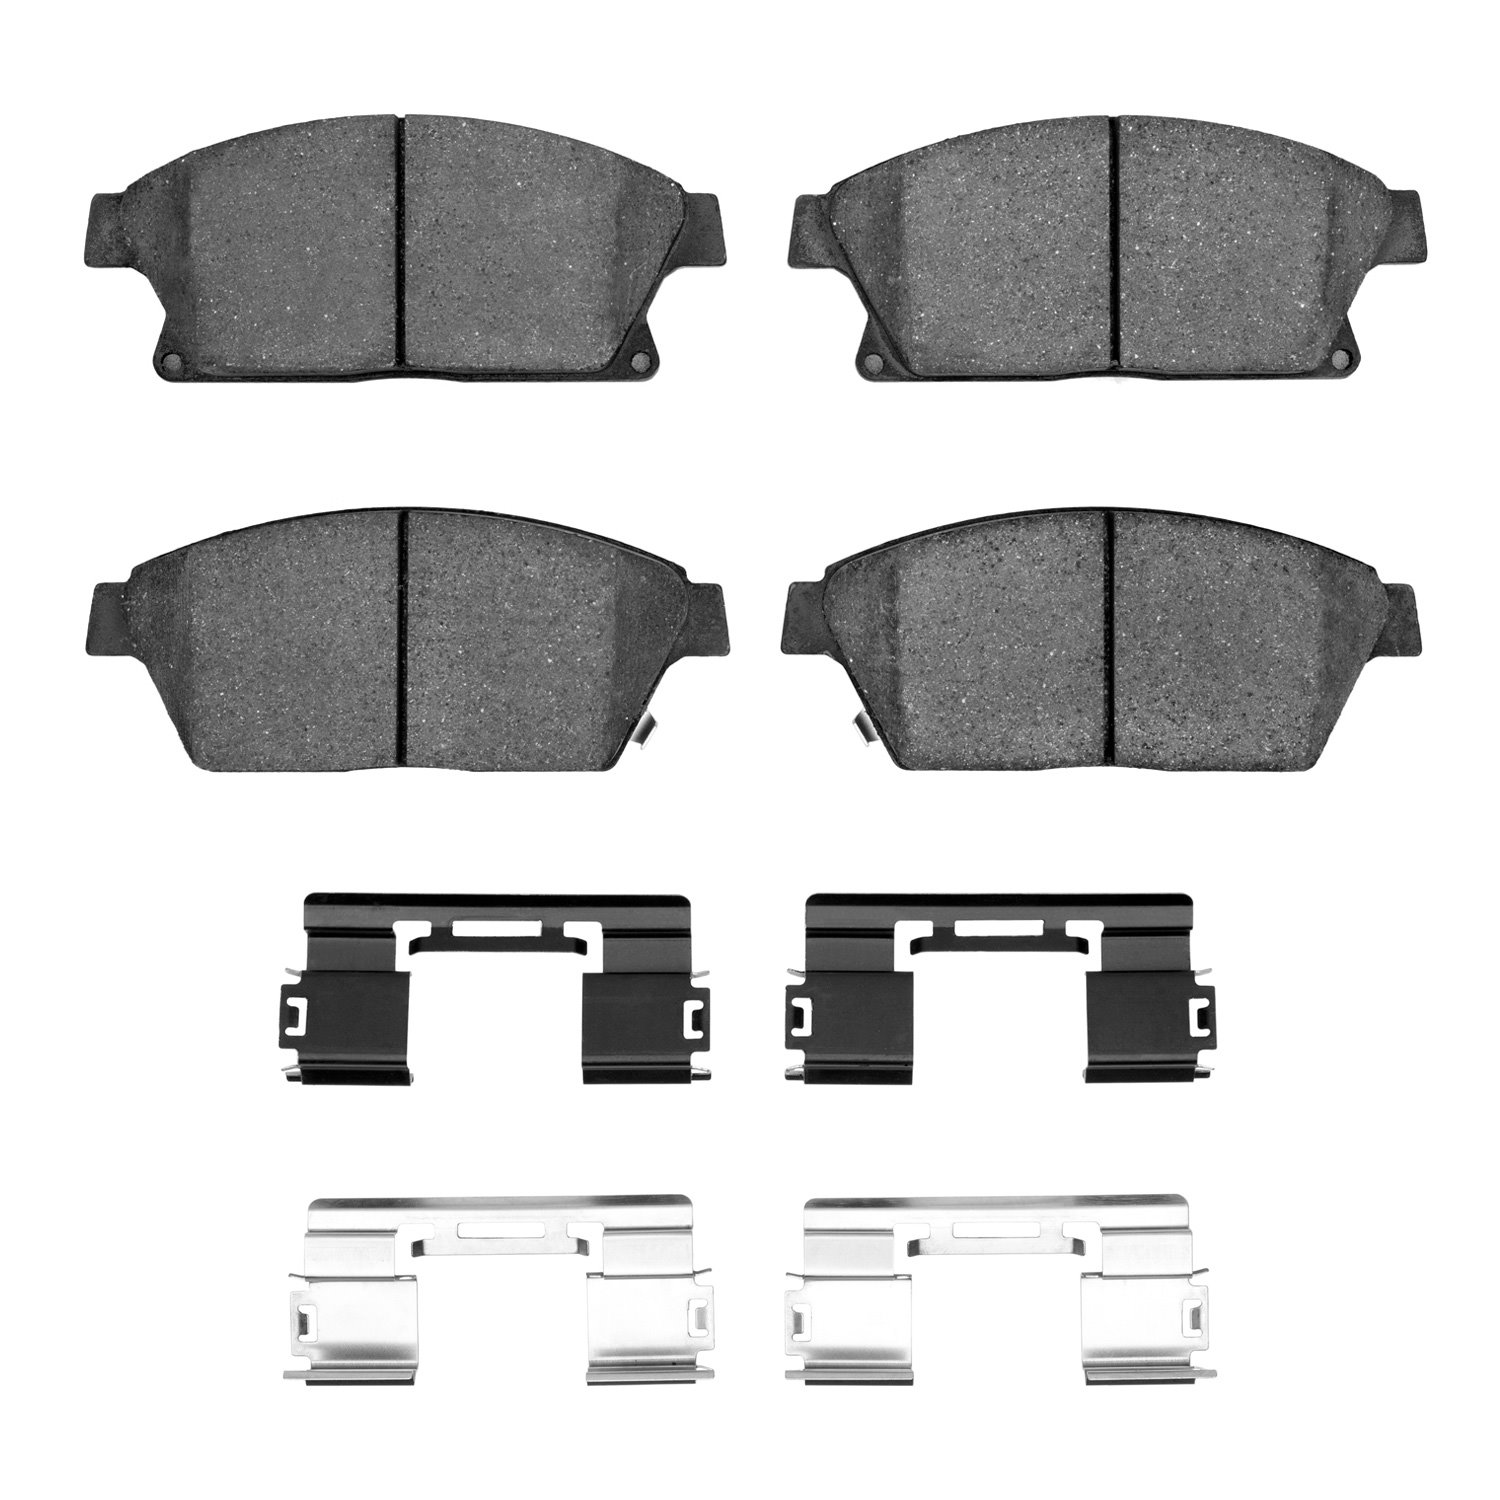 1311-1467-01 3000-Series Semi-Metallic Brake Pads & Hardware Kit, 2011-2019 GM, Position: Front